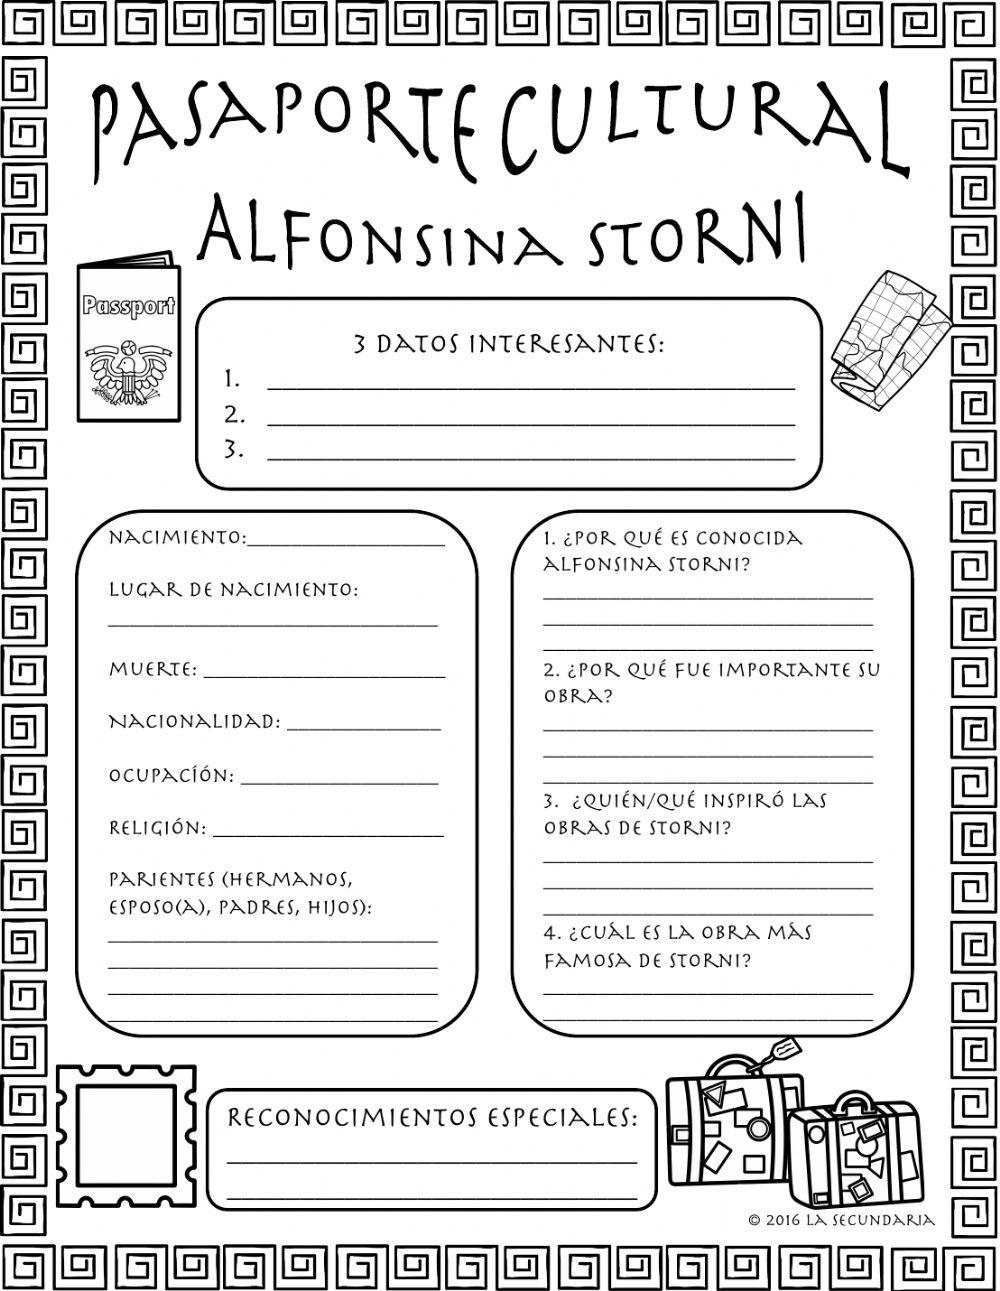 Alfonsina storni